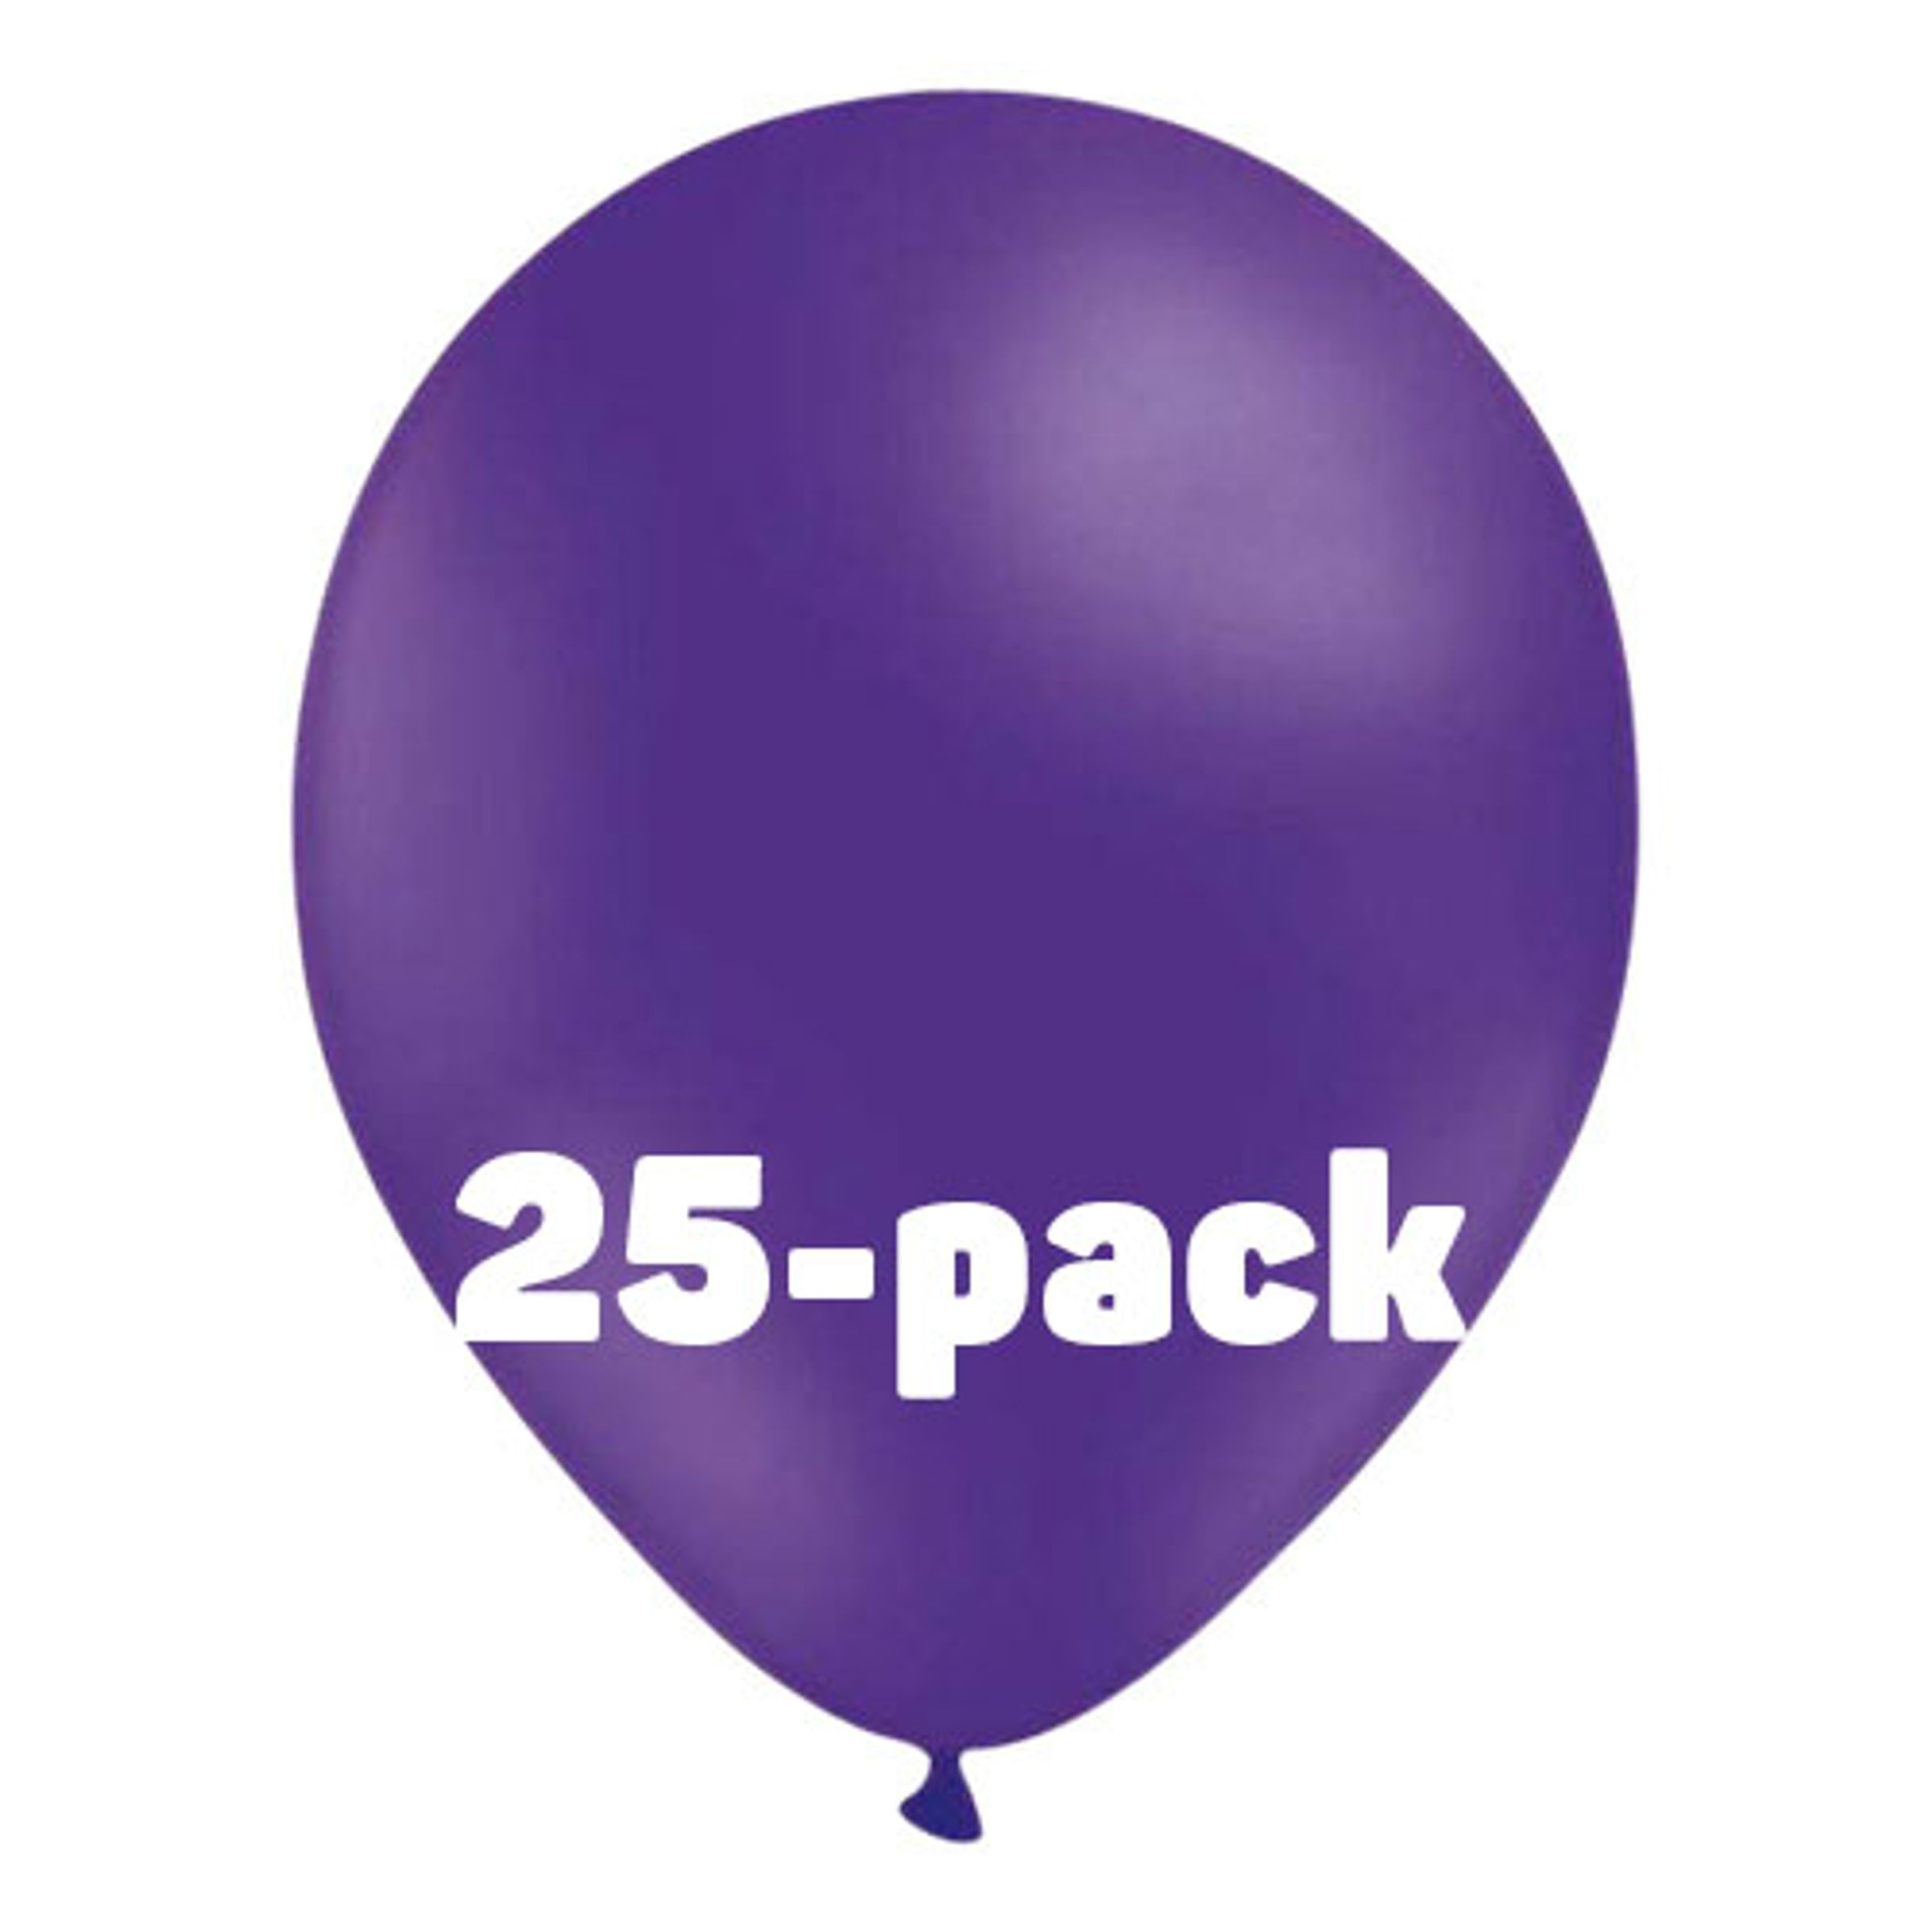 Ballonger Lila - 25-pack